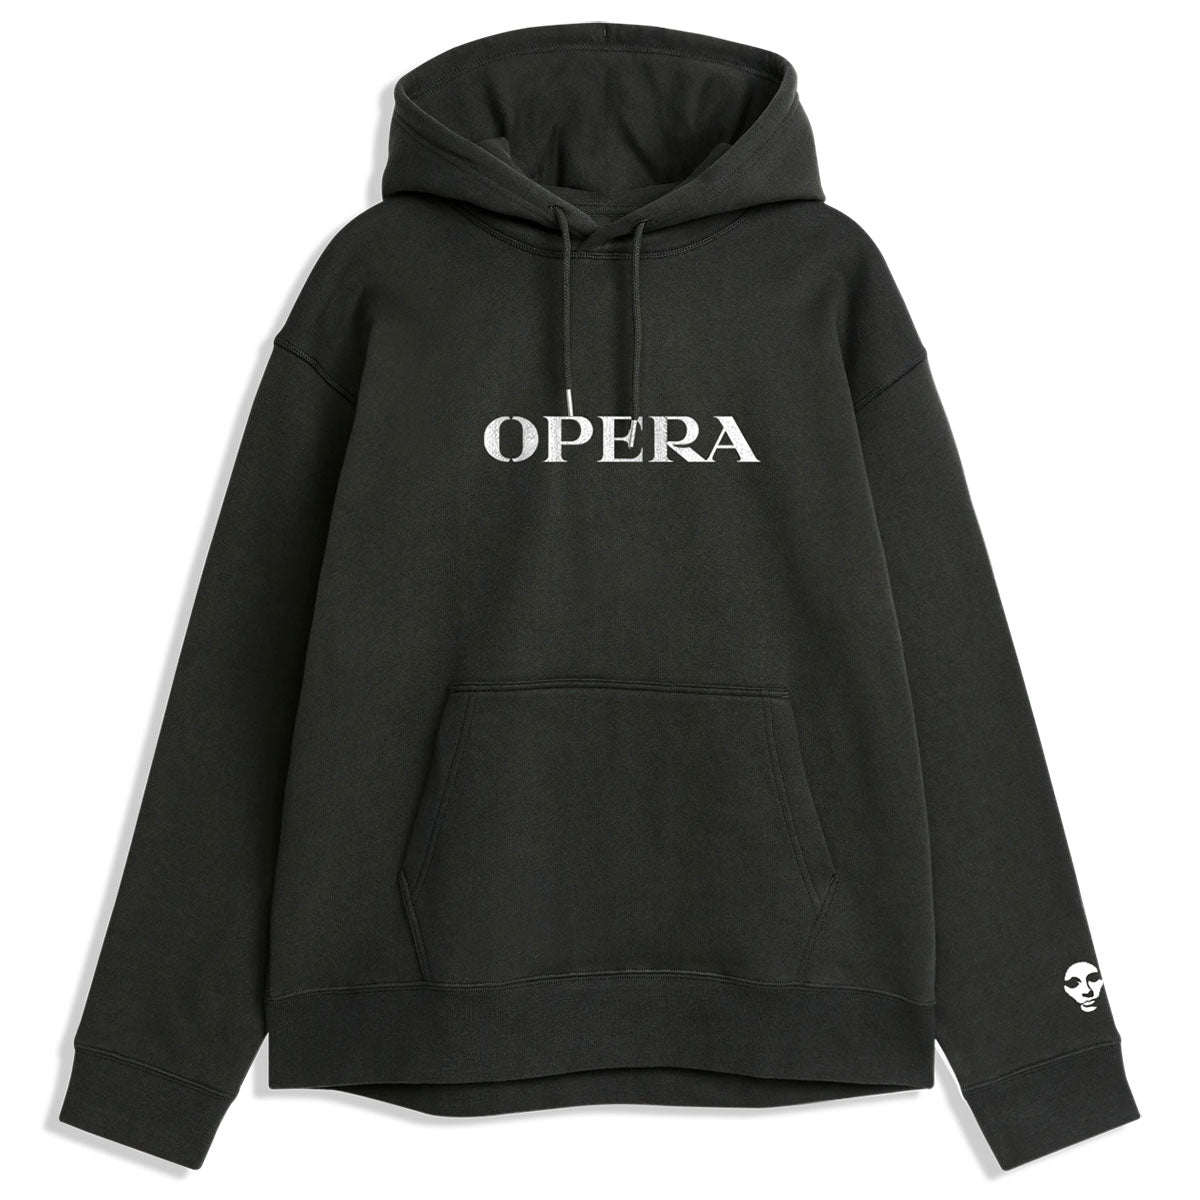 Opera Overture Hoodie - Black image 1